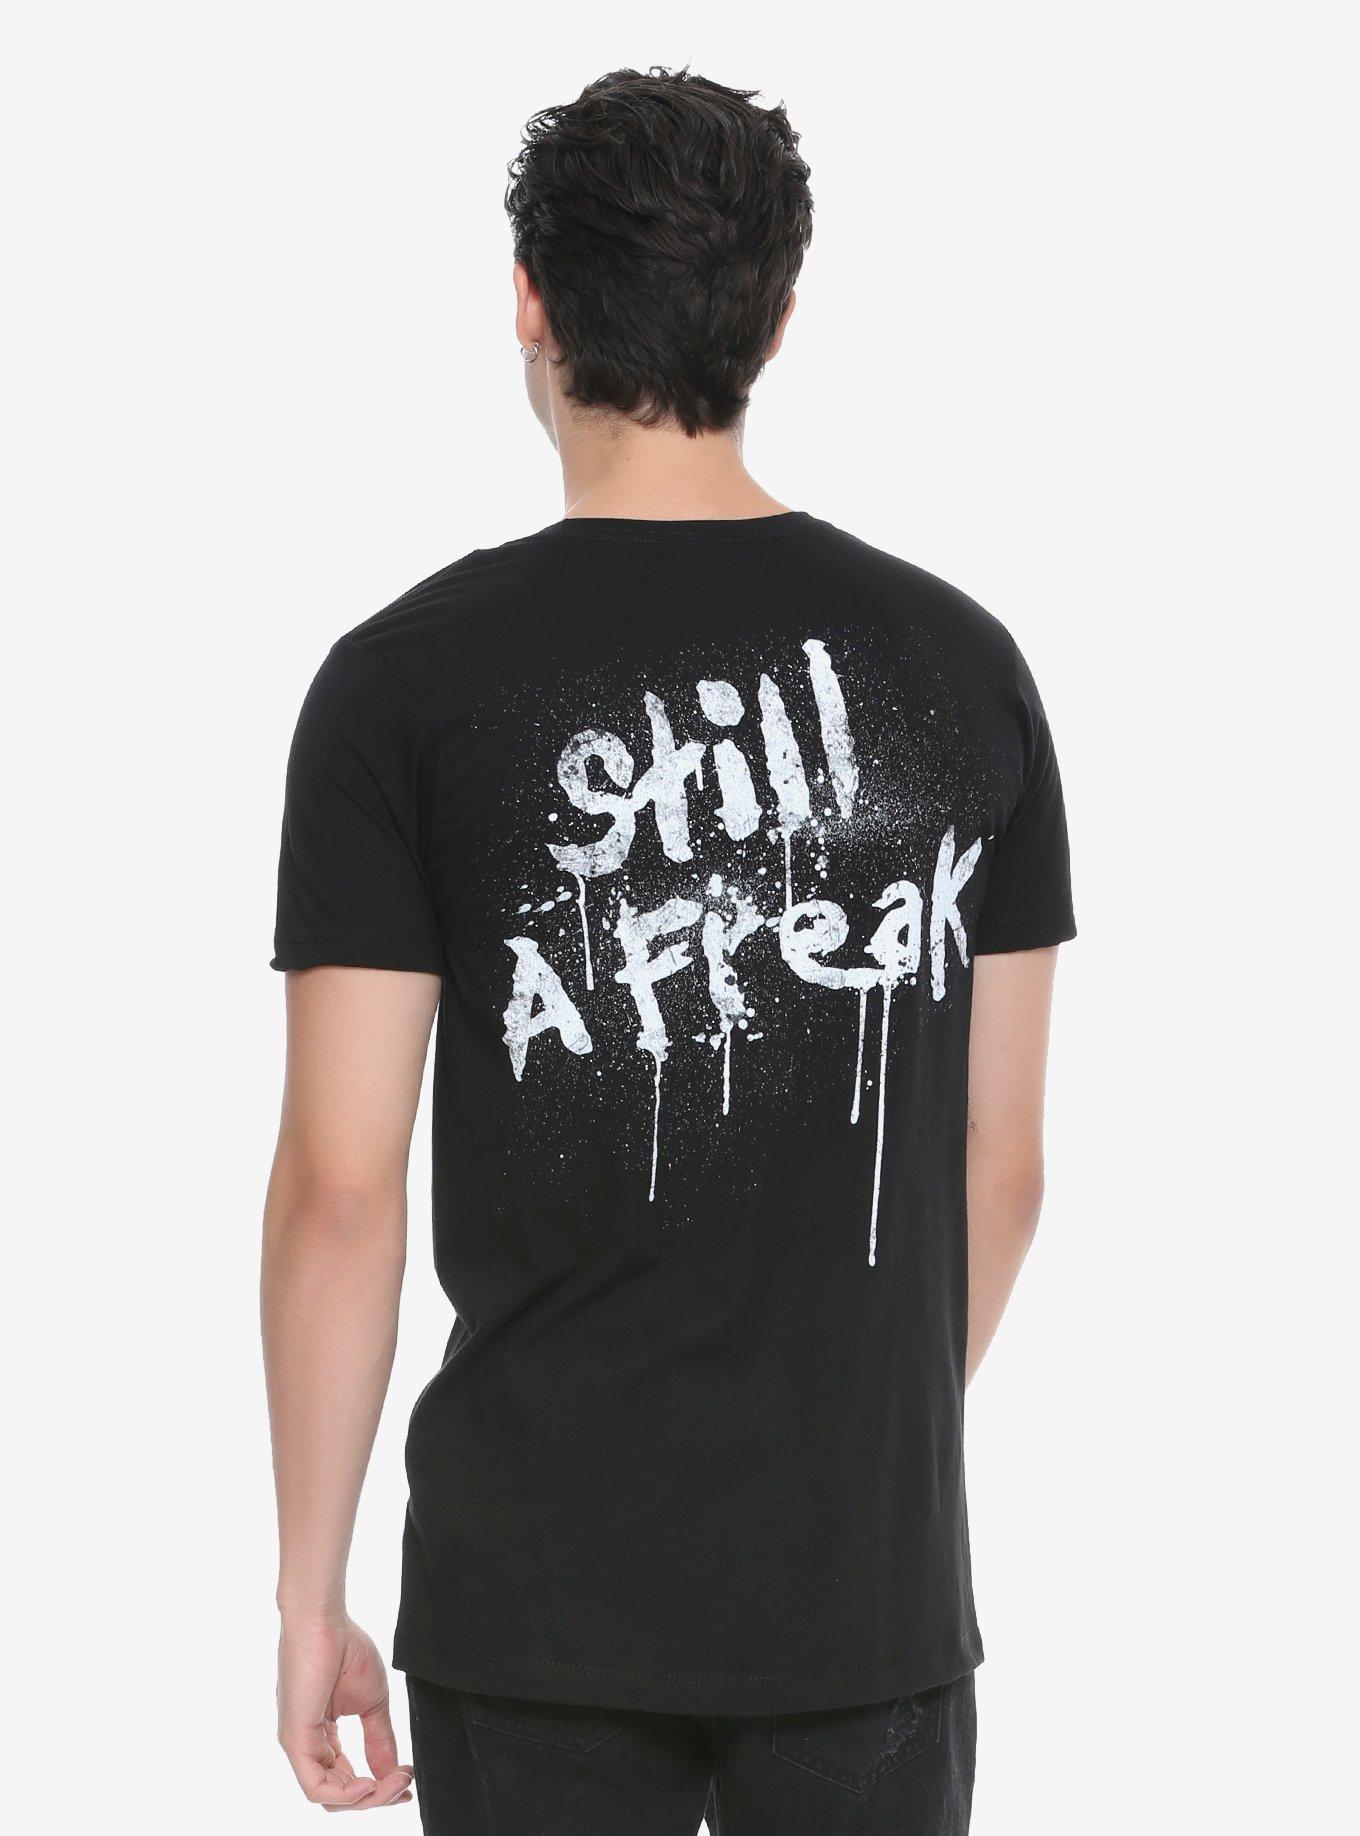 Korn Still A Freak T-Shirt | Hot Topic